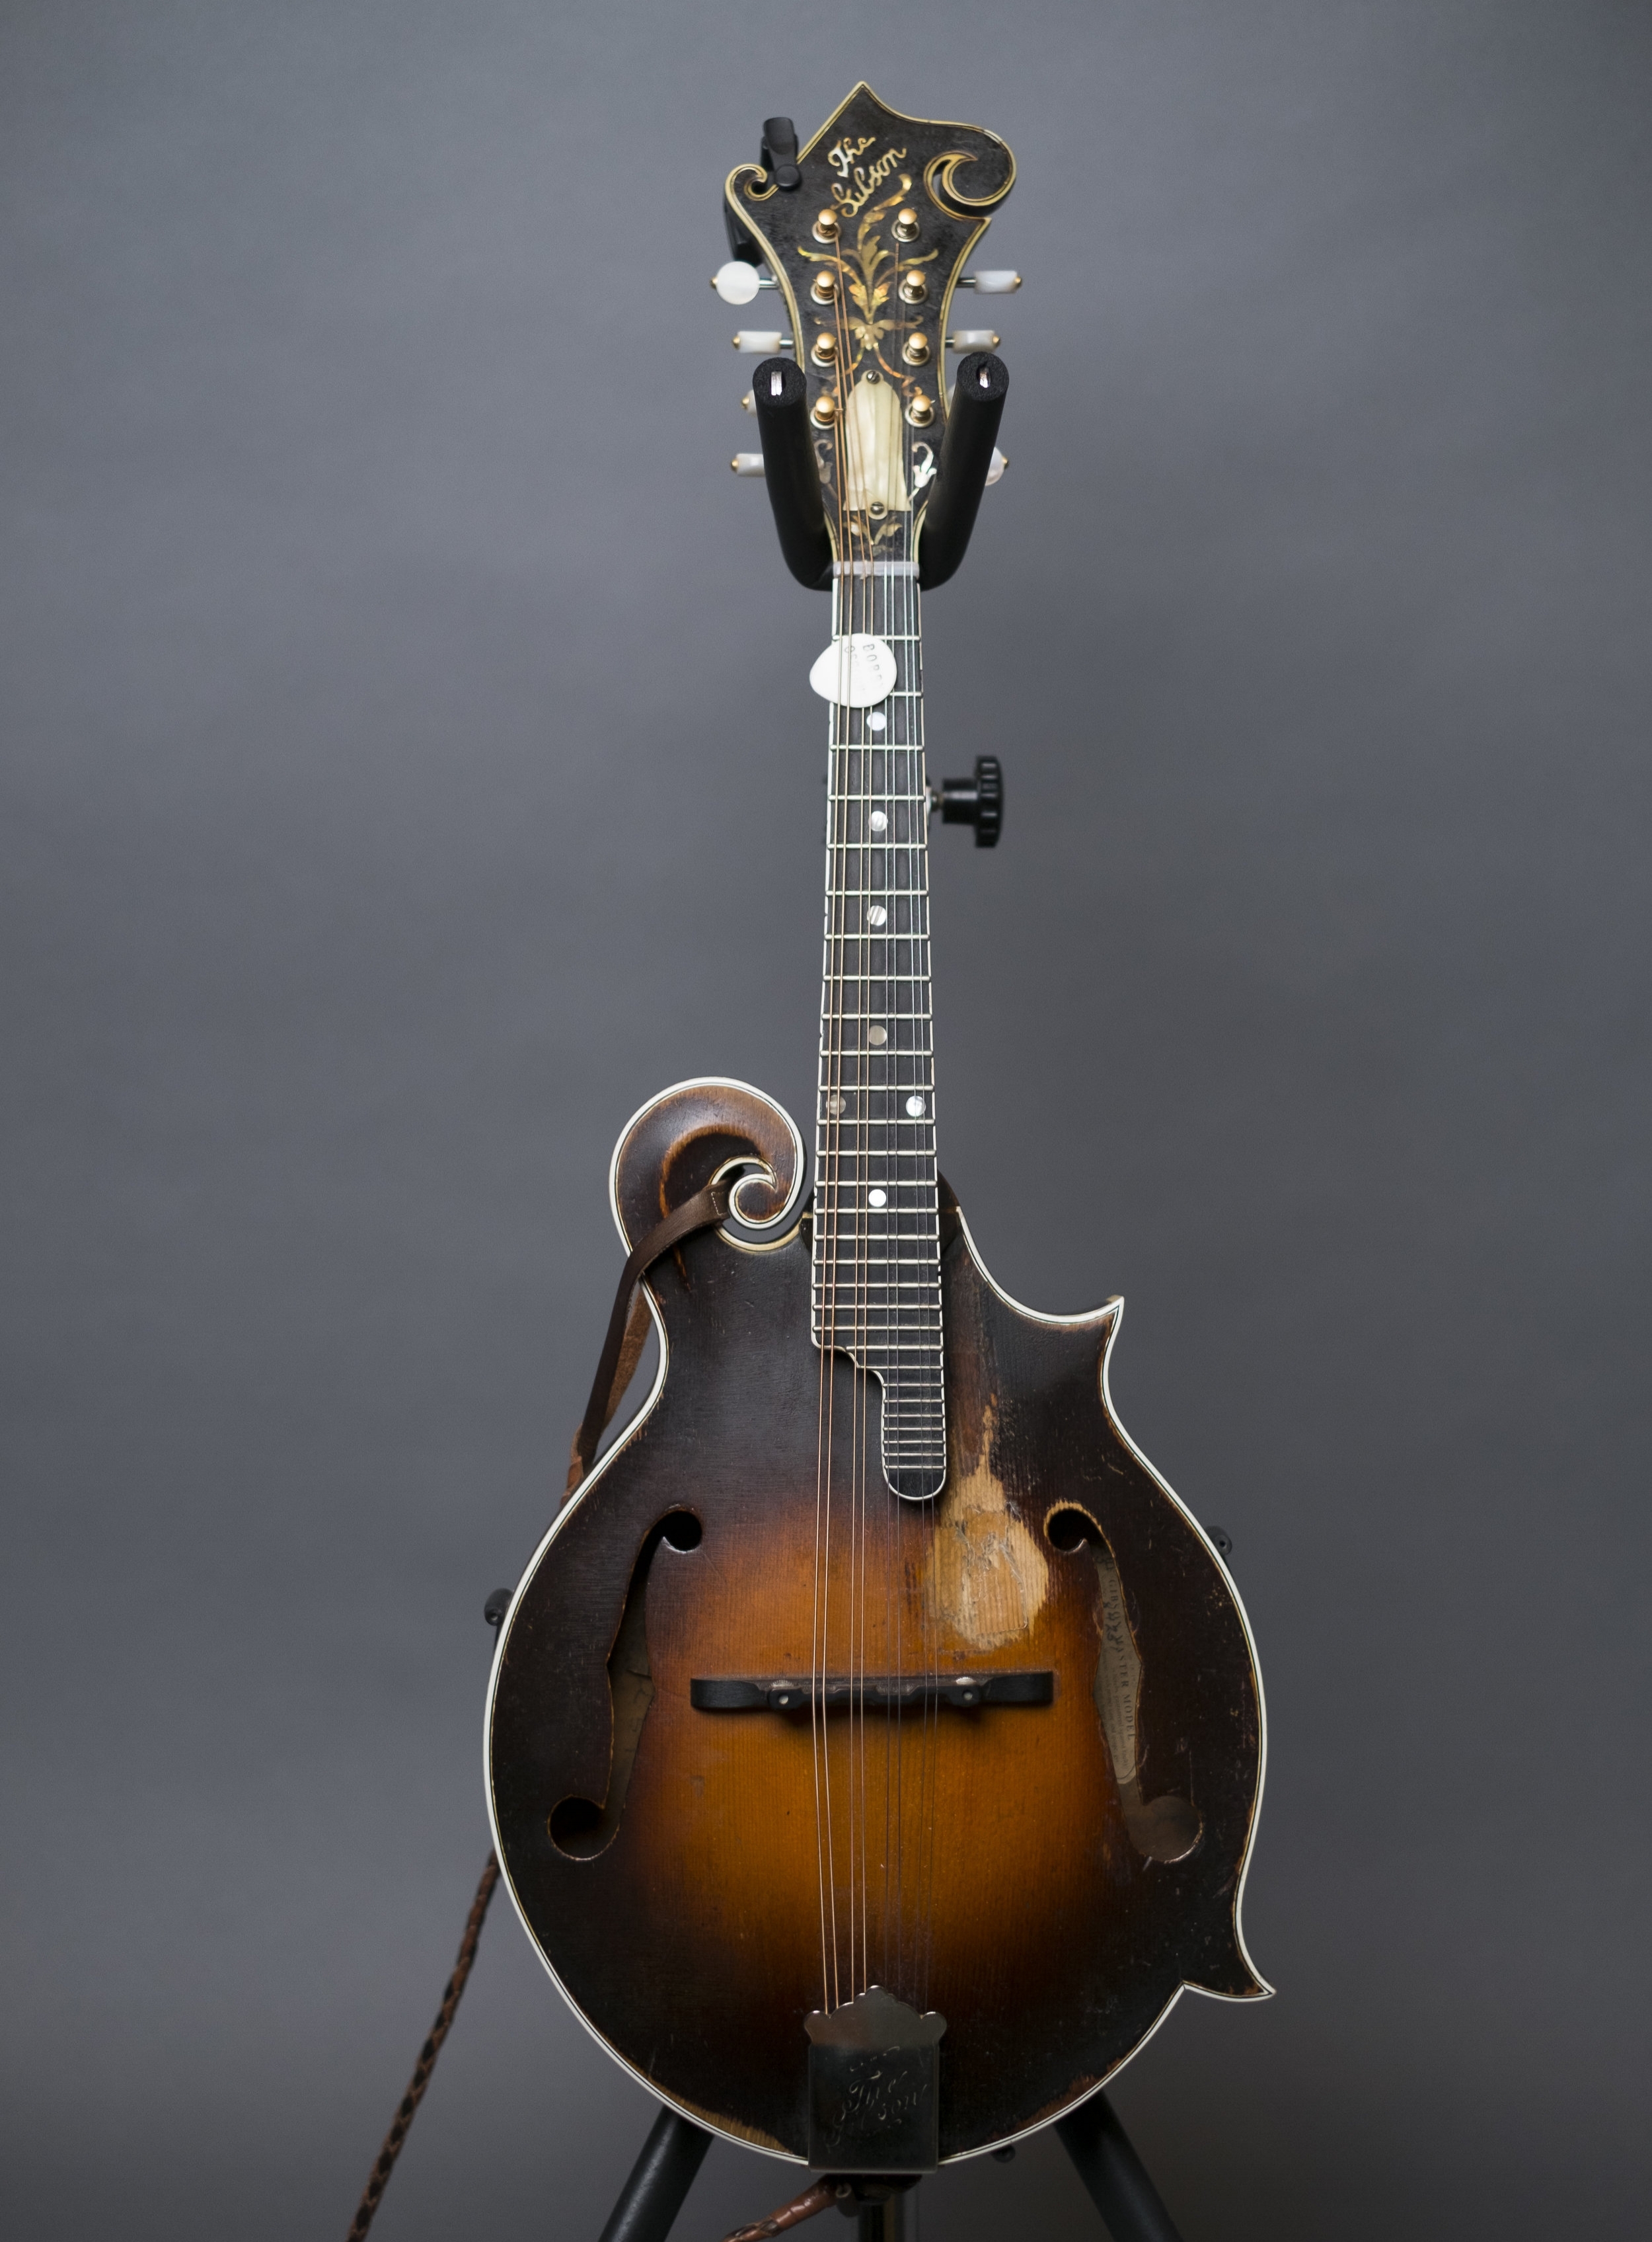 Bobby Osborne's 1925 Gibson F5